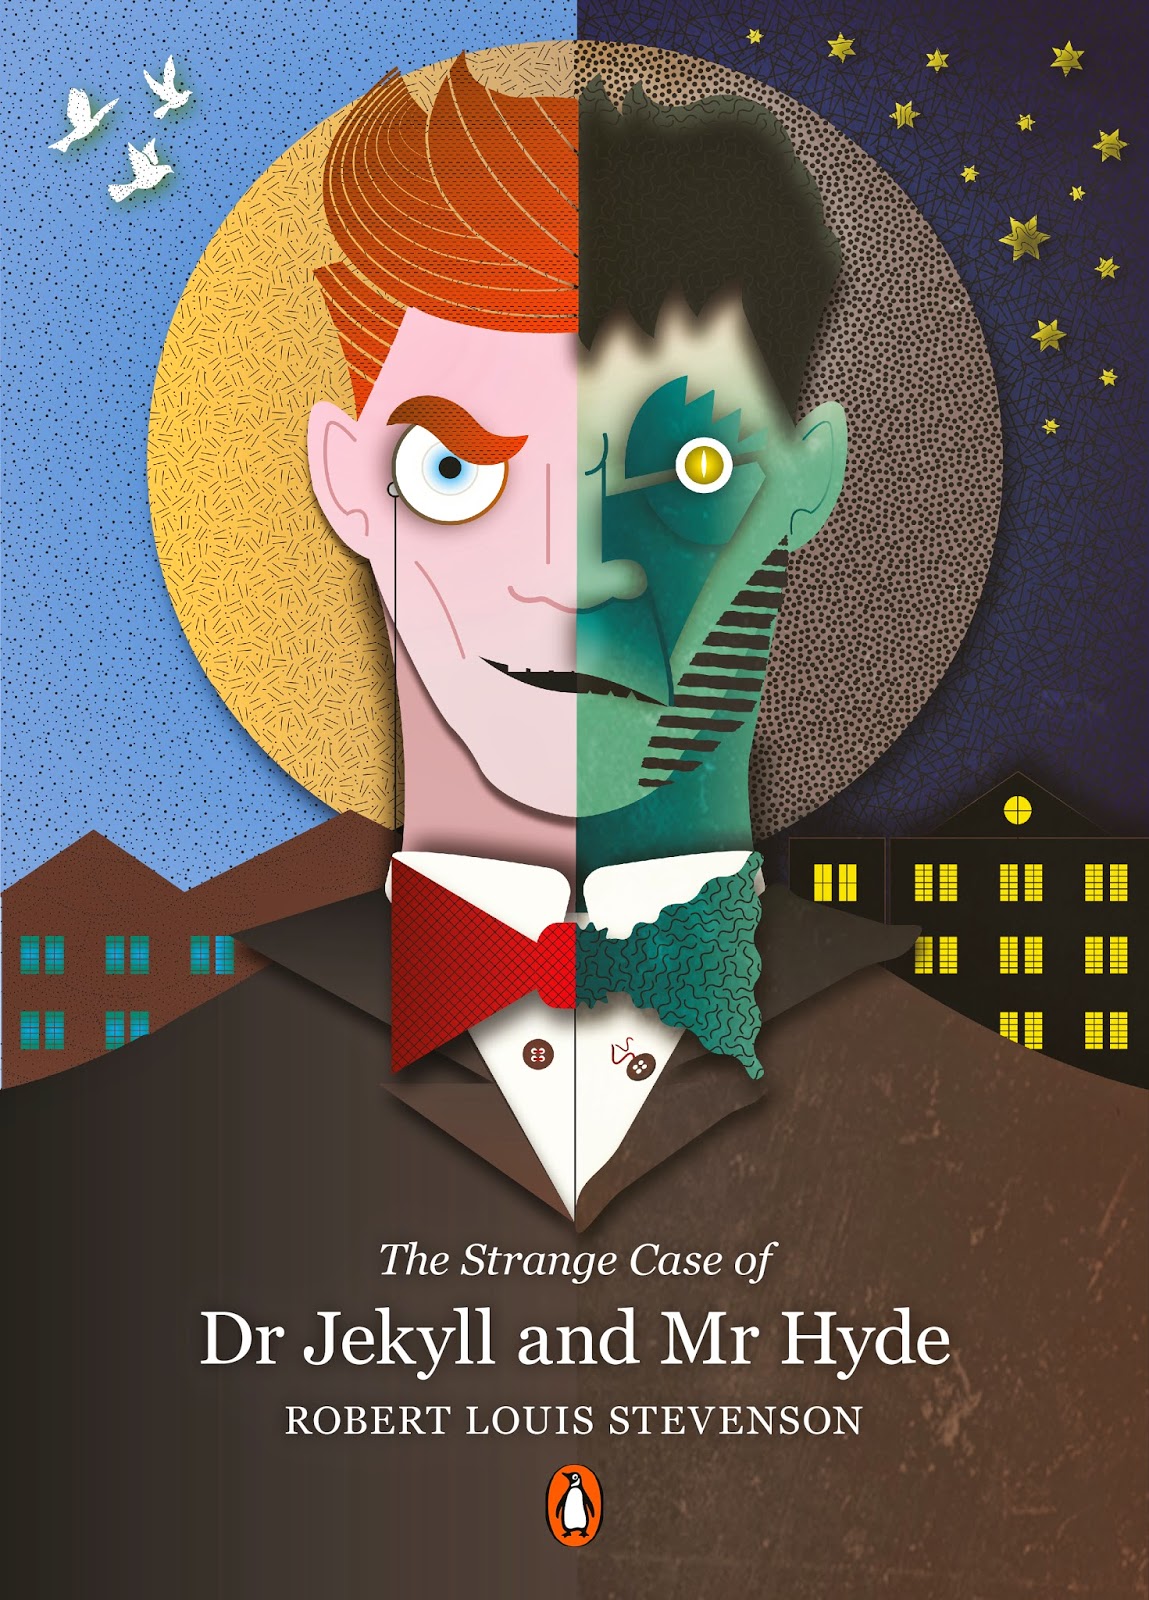 Mr jekyll